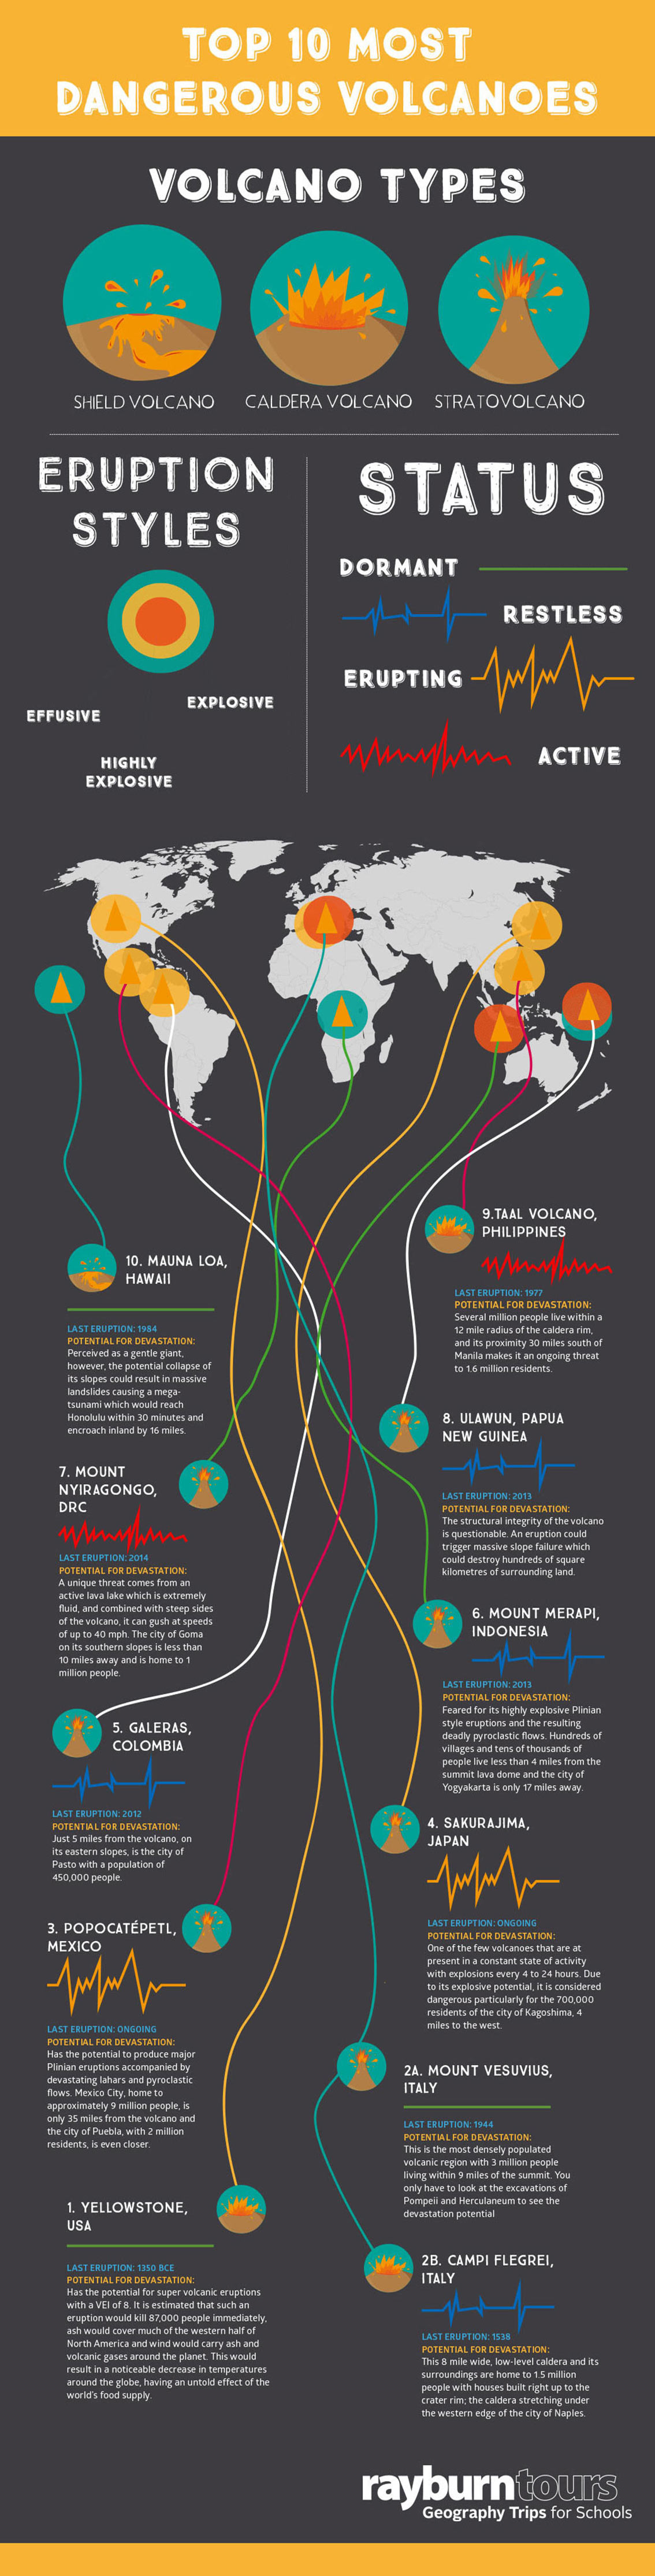 Top 10 Deadliest Volcanoes [Infographic]1134 x 4459